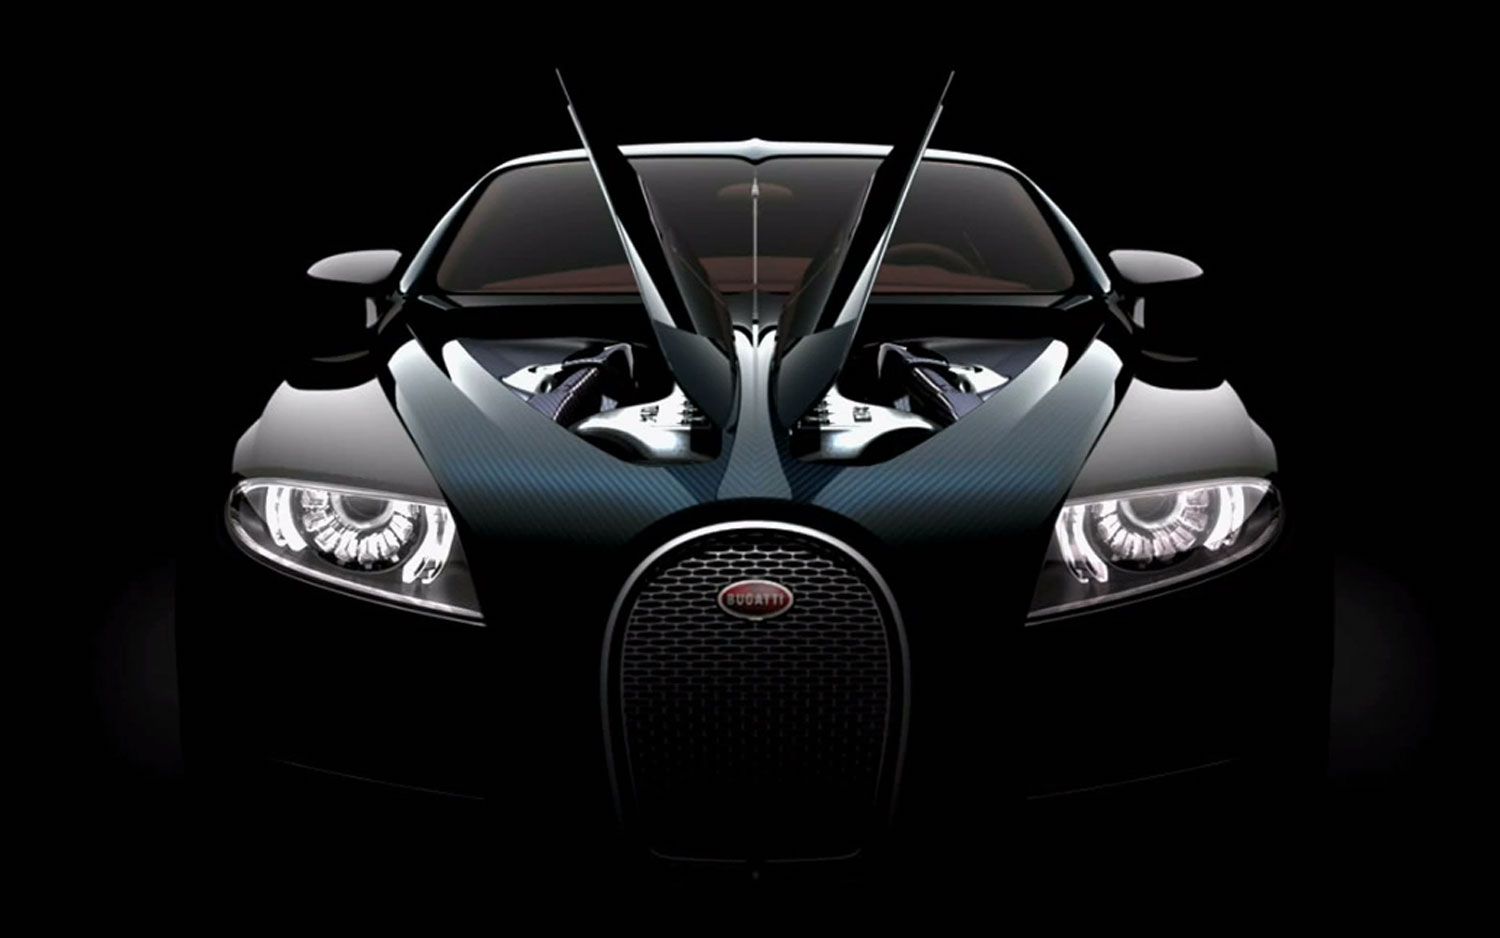 Bugatti Veyron Picture And Wallpaper